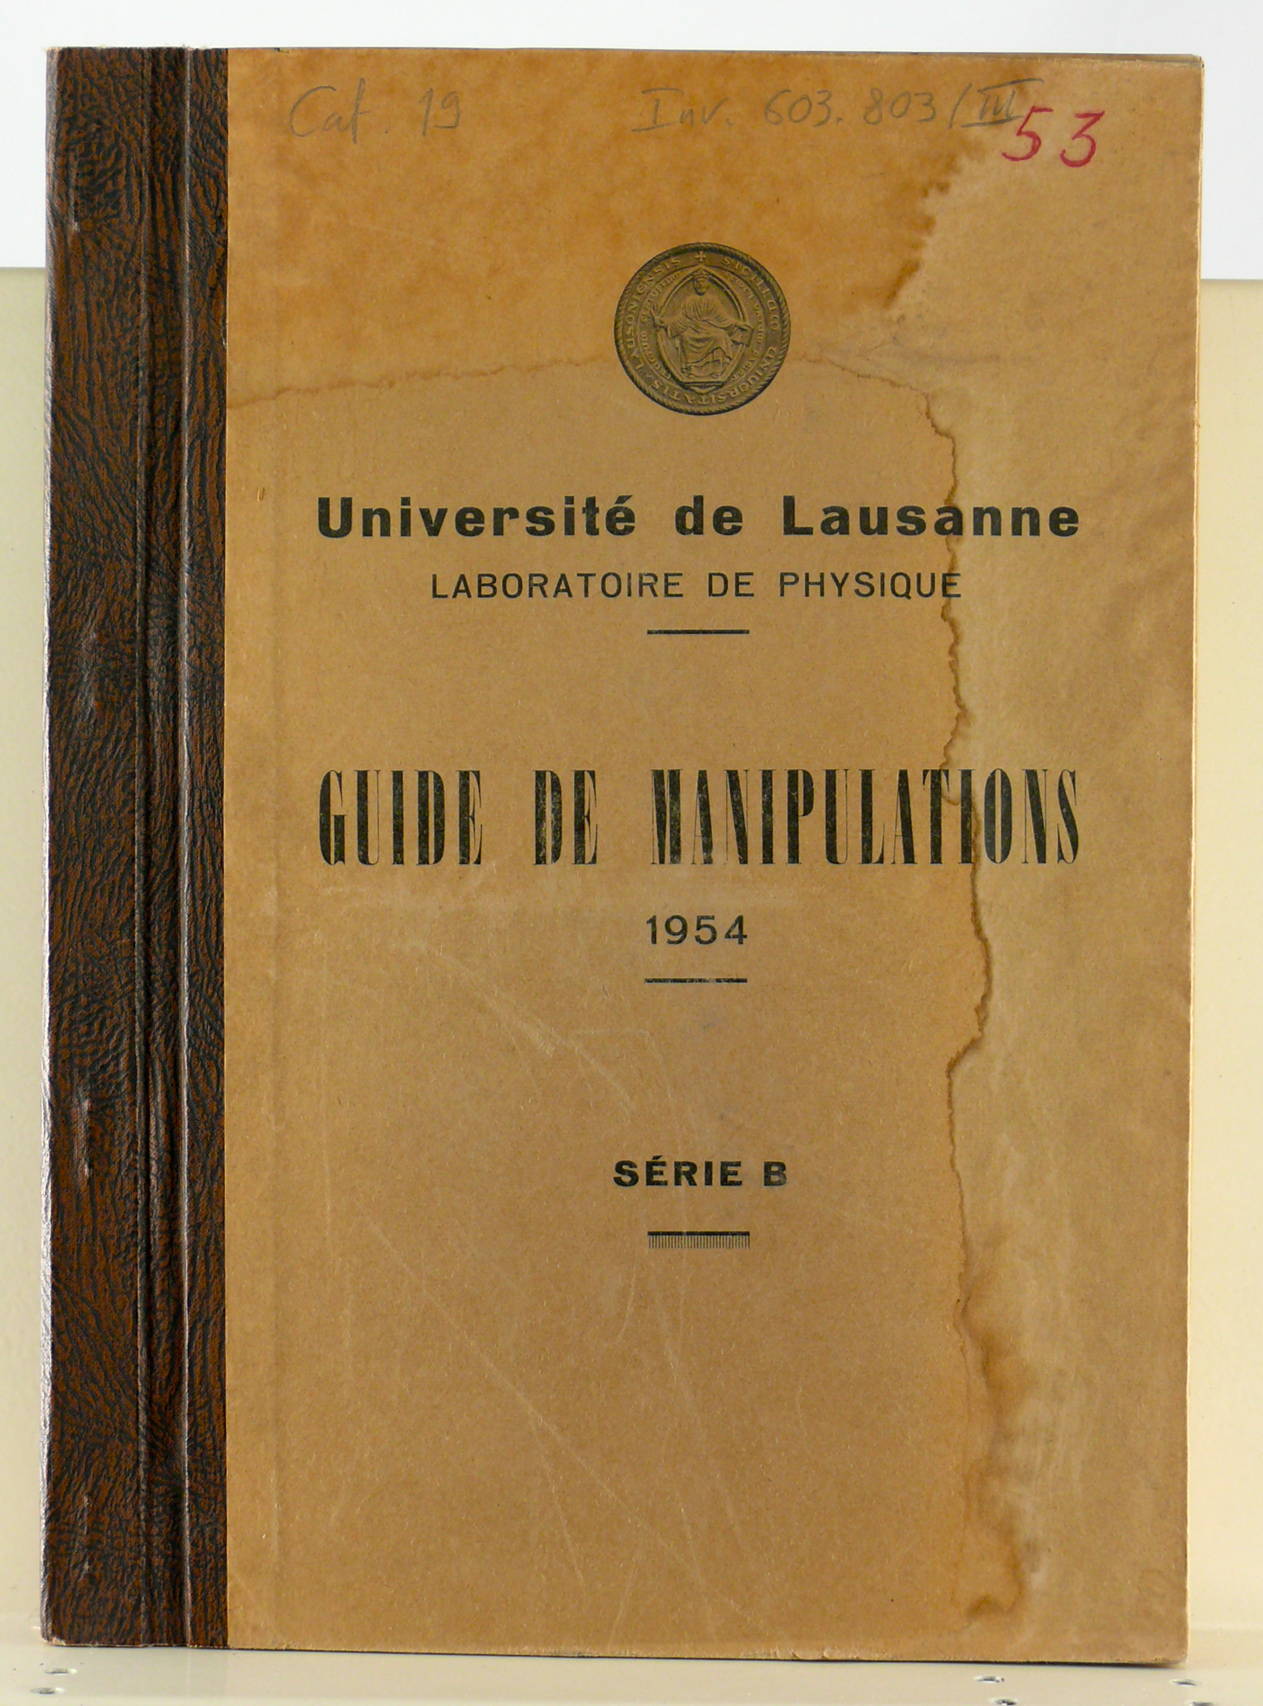 Guides de manipulation 1950 (Séries A et B)
Université de Lausanne, Laboratoire de physique